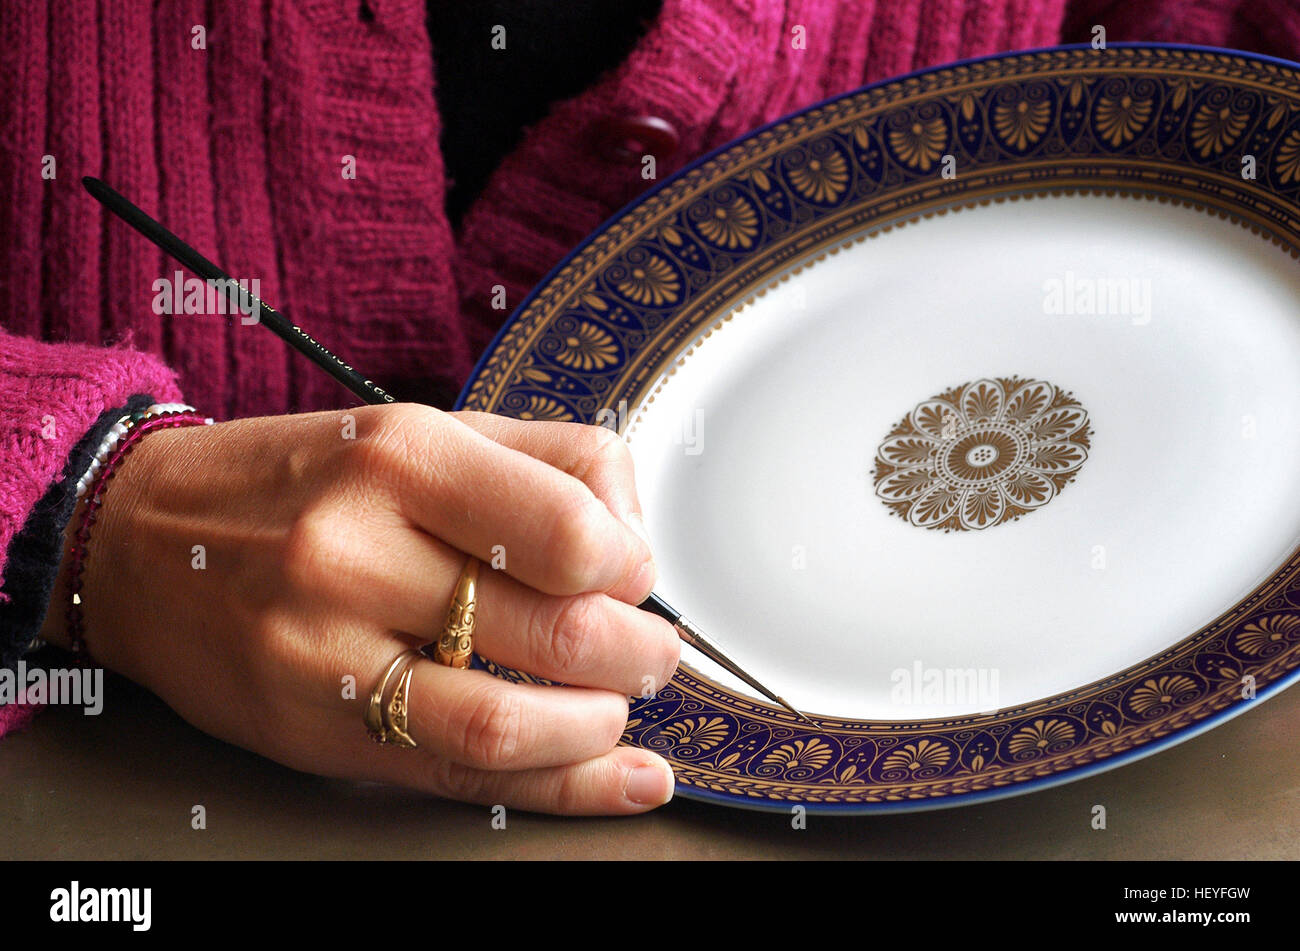 La peinture d'or sur une assiette, porcelaine de Sèvres, France Fabrication  Photo Stock - Alamy